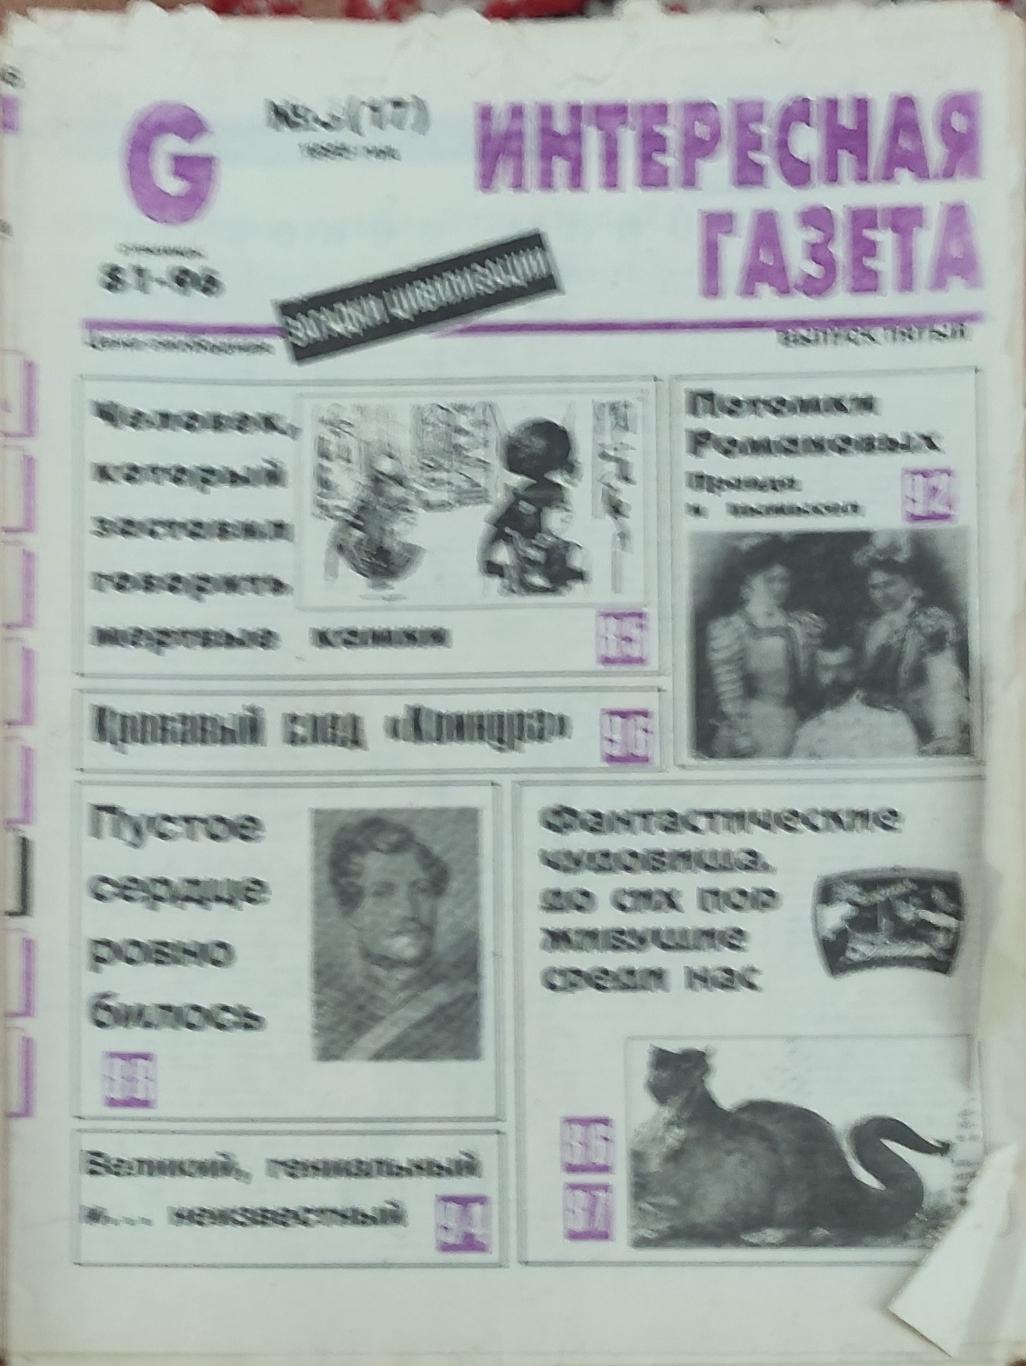 Интересная газета 1995 номер 3